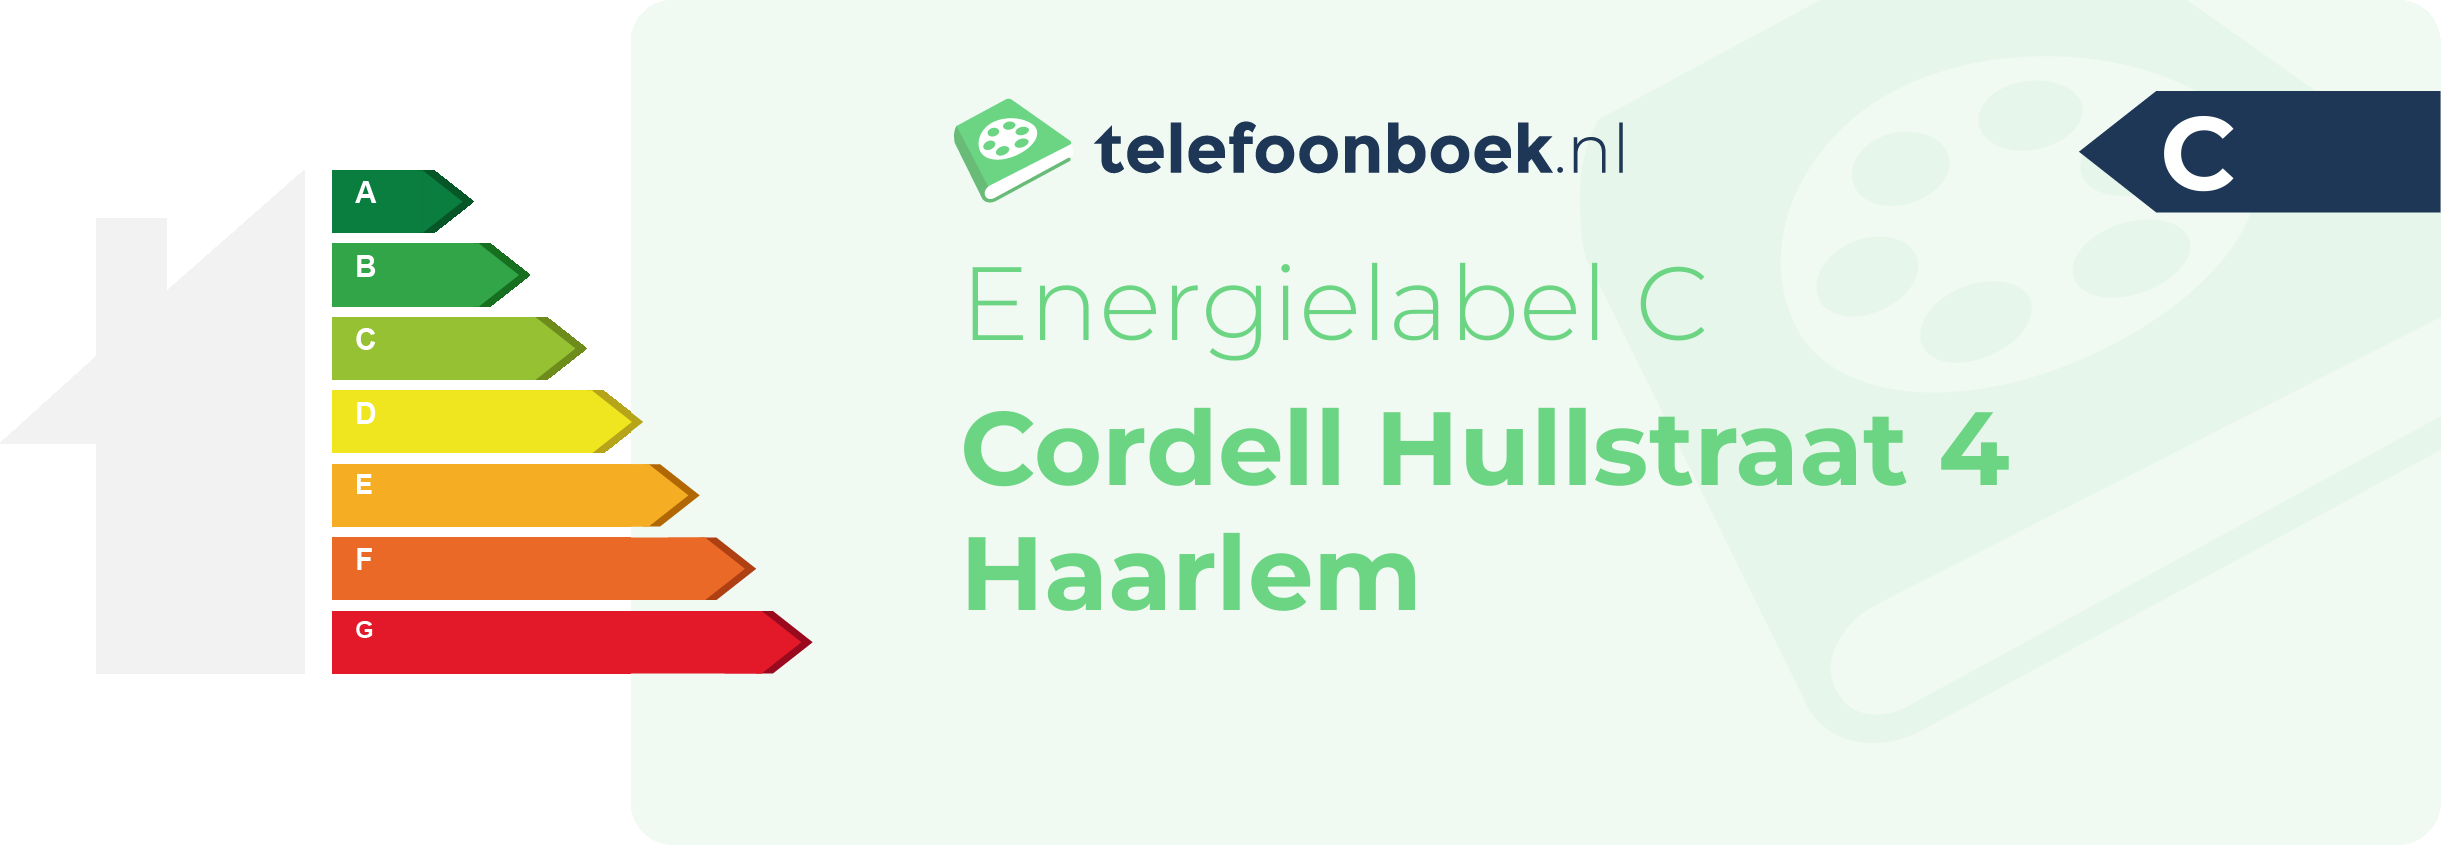 Energielabel Cordell Hullstraat 4 Haarlem